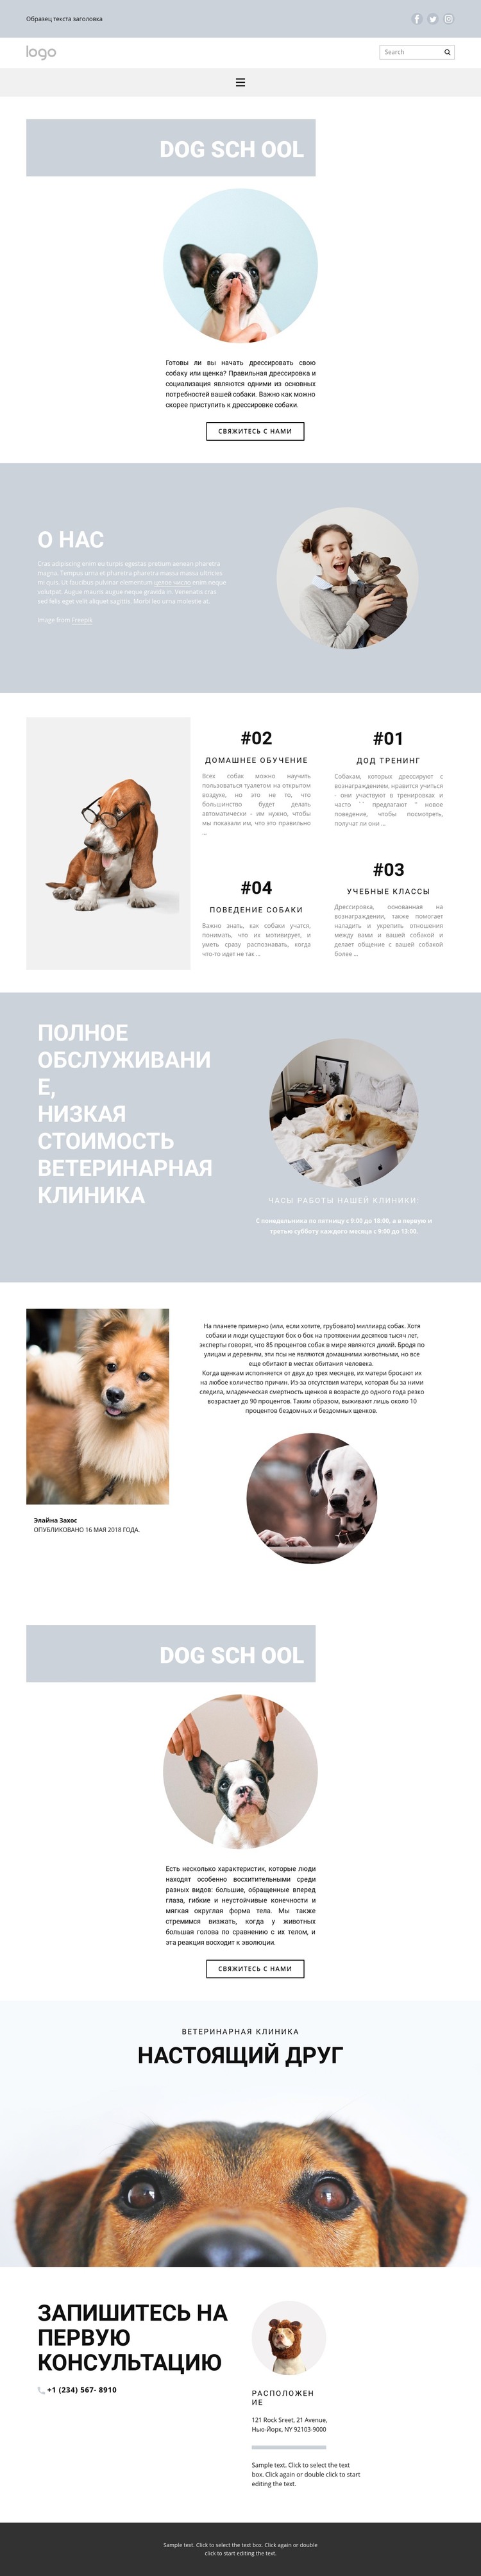 Разведение собак HTML шаблон